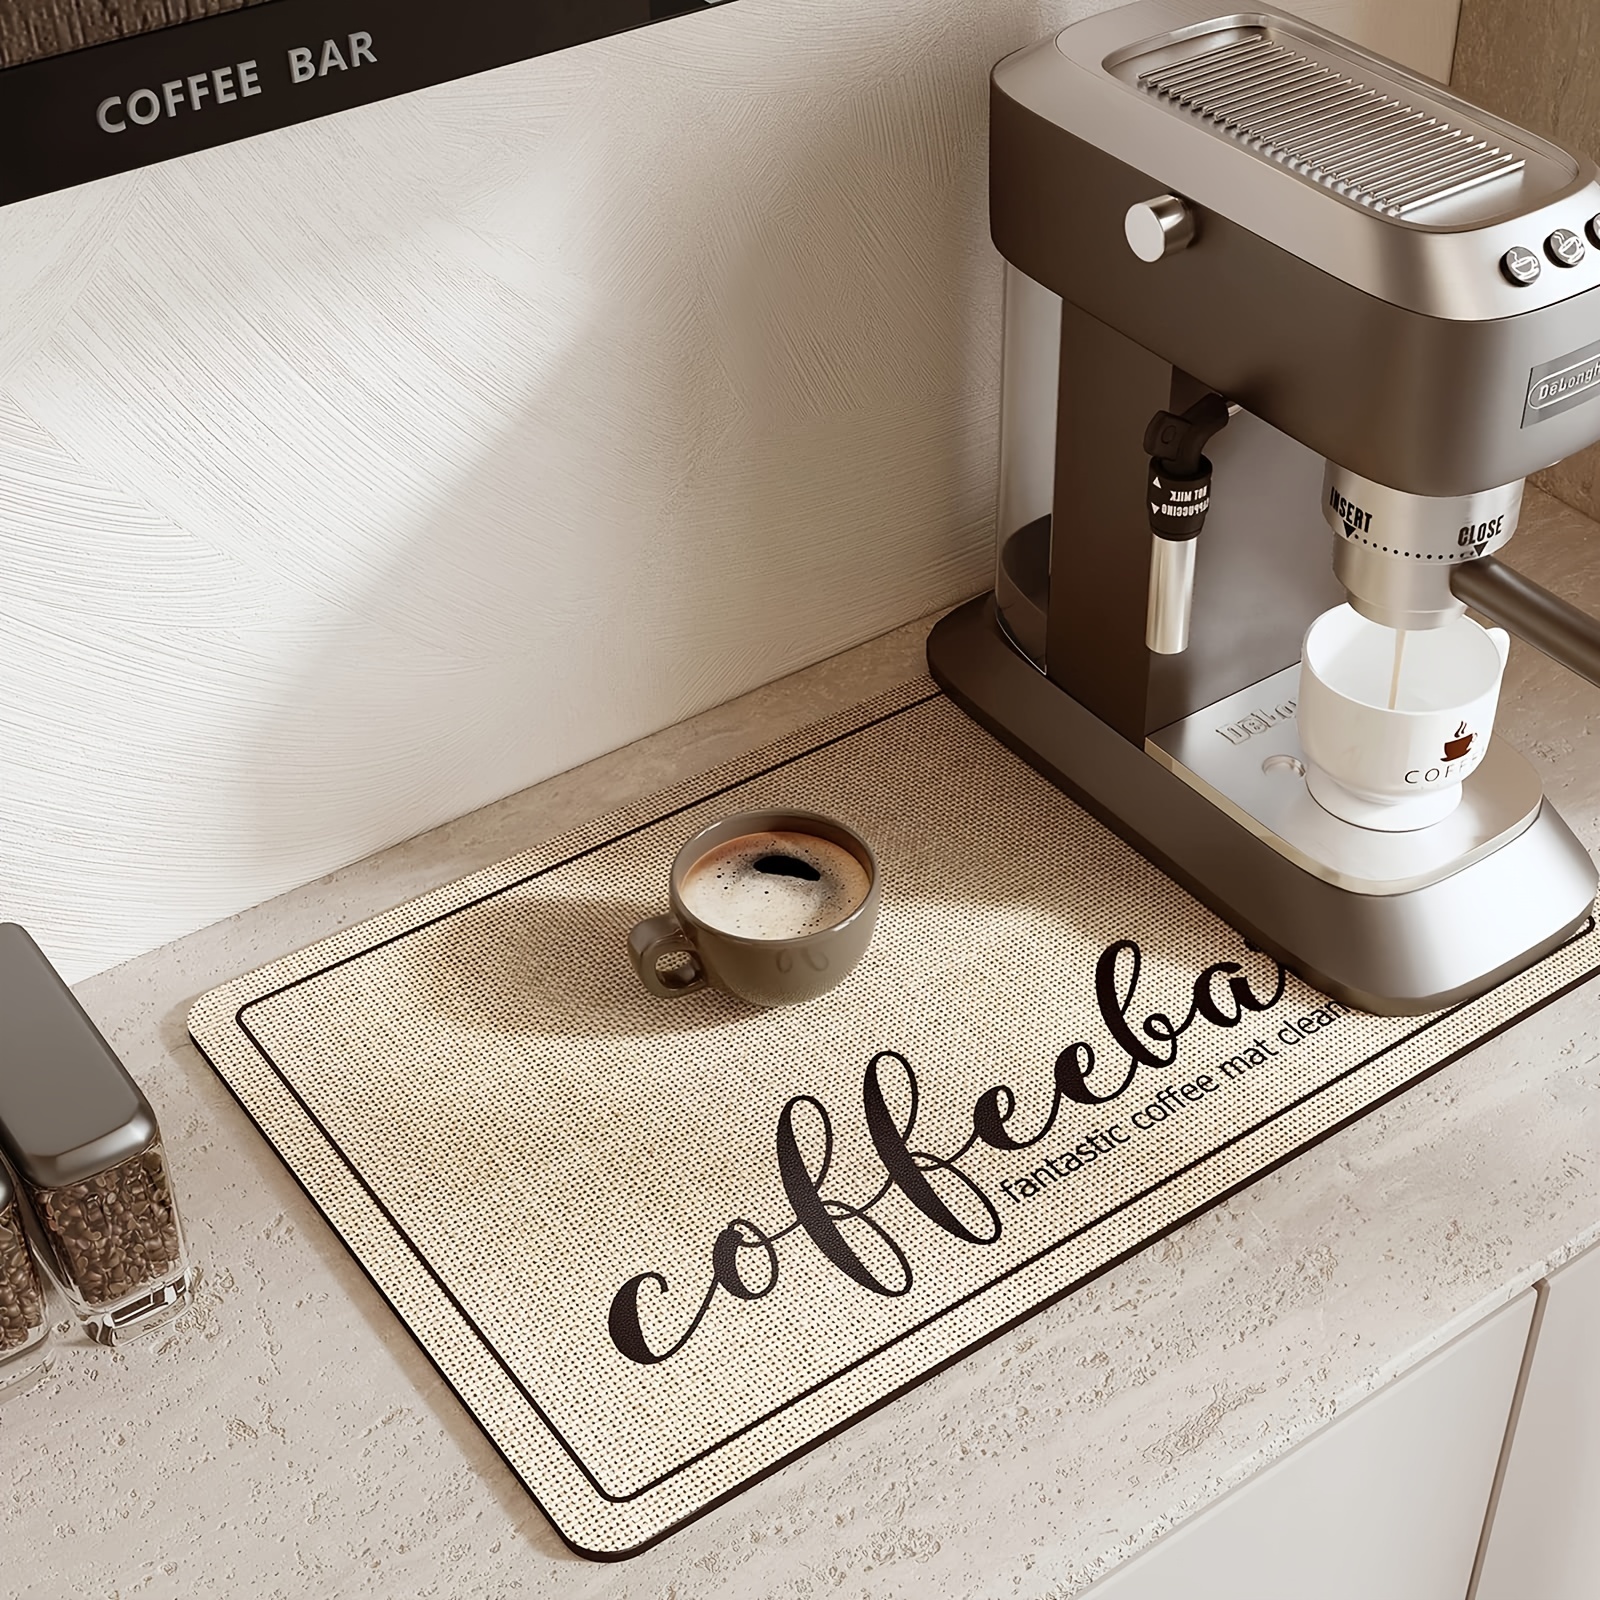 Tappetino per caffettiera personalizzato, simpatica tovaglietta lavabile  per tazza di caffè retrò per la tua caffettiera o macchina per caffè  espresso, accessori per l'arredamento del bar -  Italia